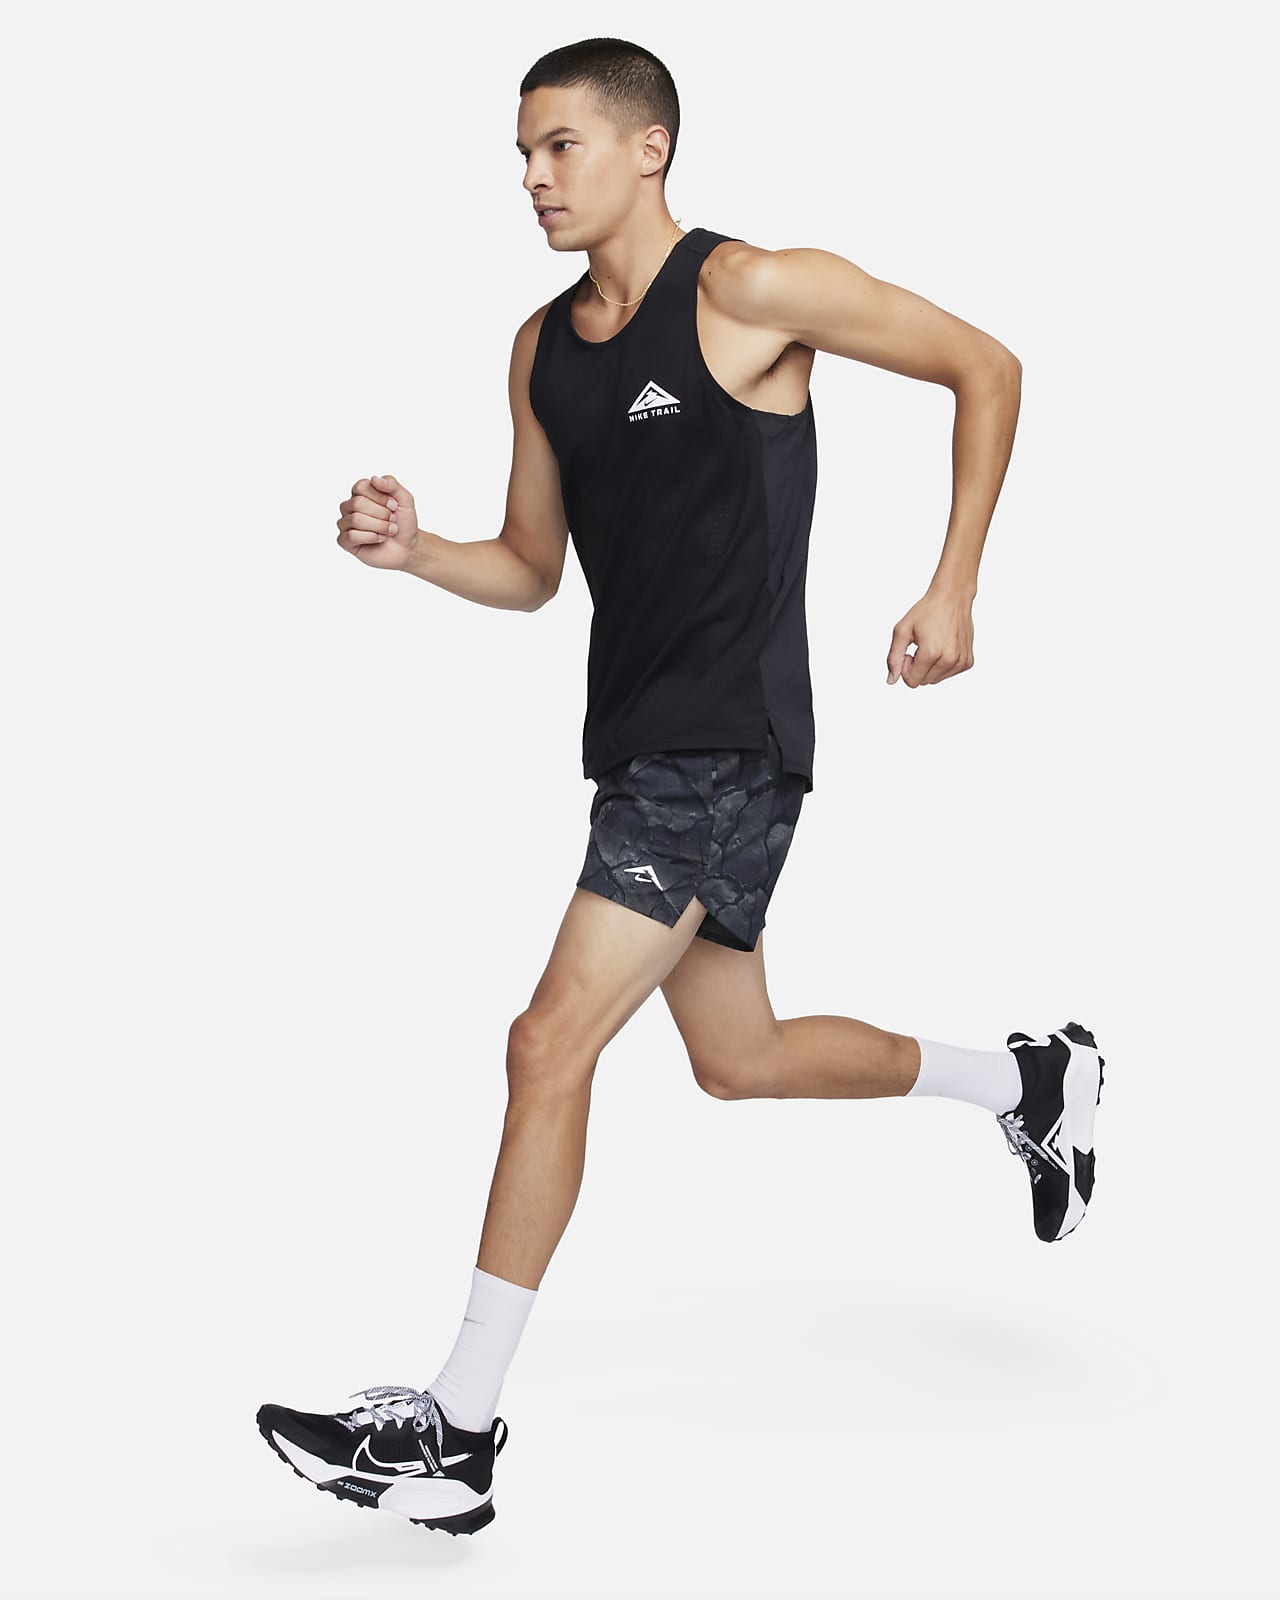 Débardeur Running Nike Homme pas cher - Neuf et occasion à prix